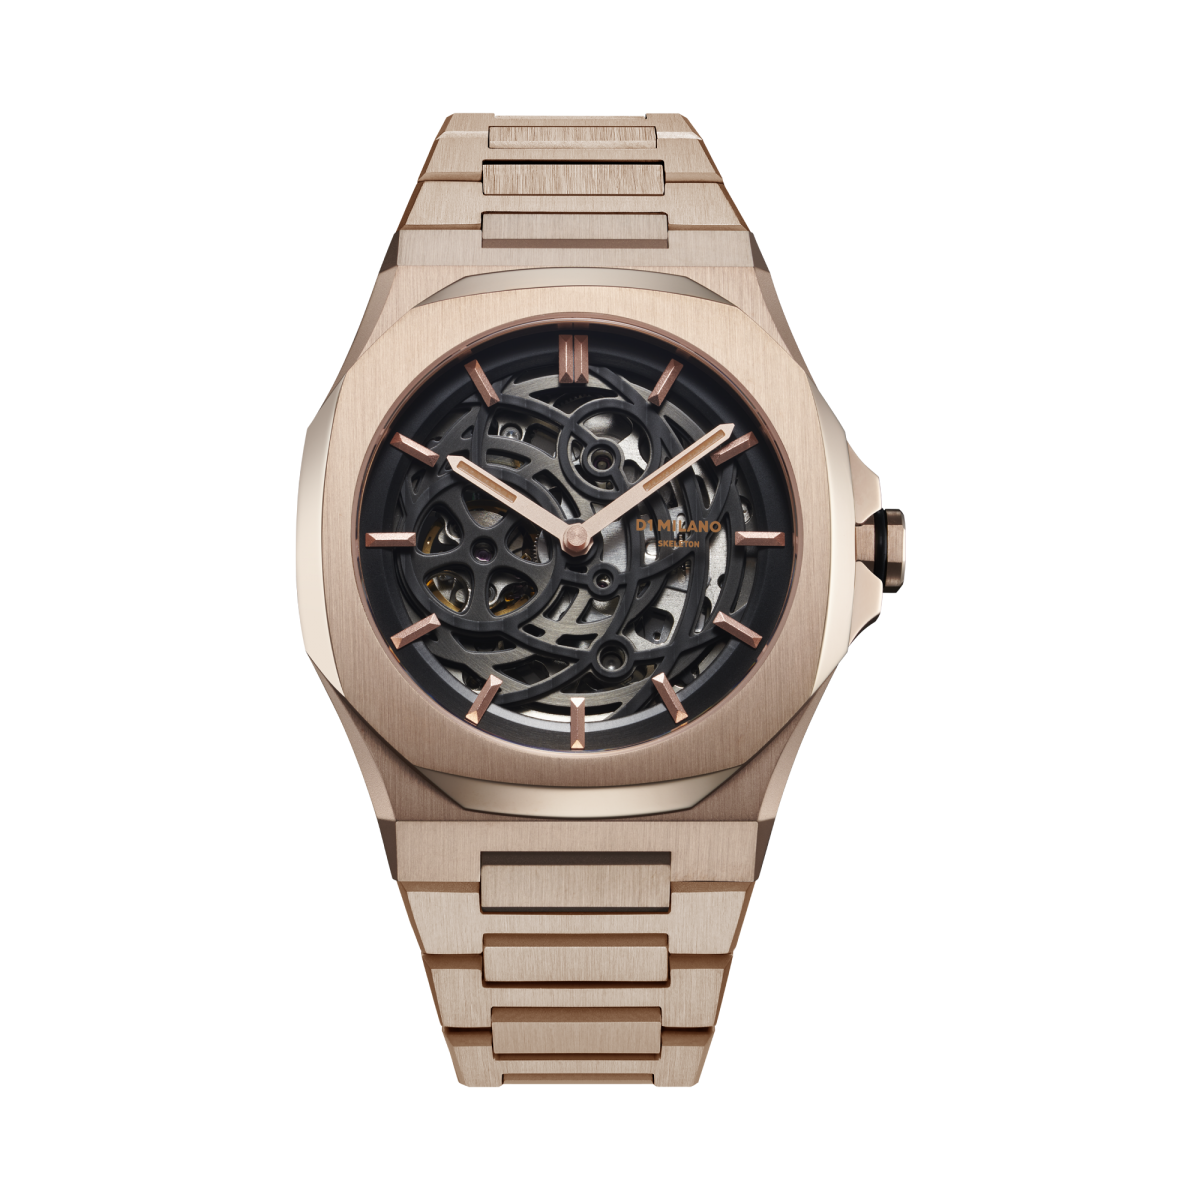 イタリア発のウォッチブランド「D1 MILANO」が自動巻きスケルトンモデルを一新、文字盤を3枚用いた「スリーレイヤーダイアル」の腕時計を発売 |  H°M'S WatchStore エイチエムエスウォッチストア | 世界のブランド腕時計専門店